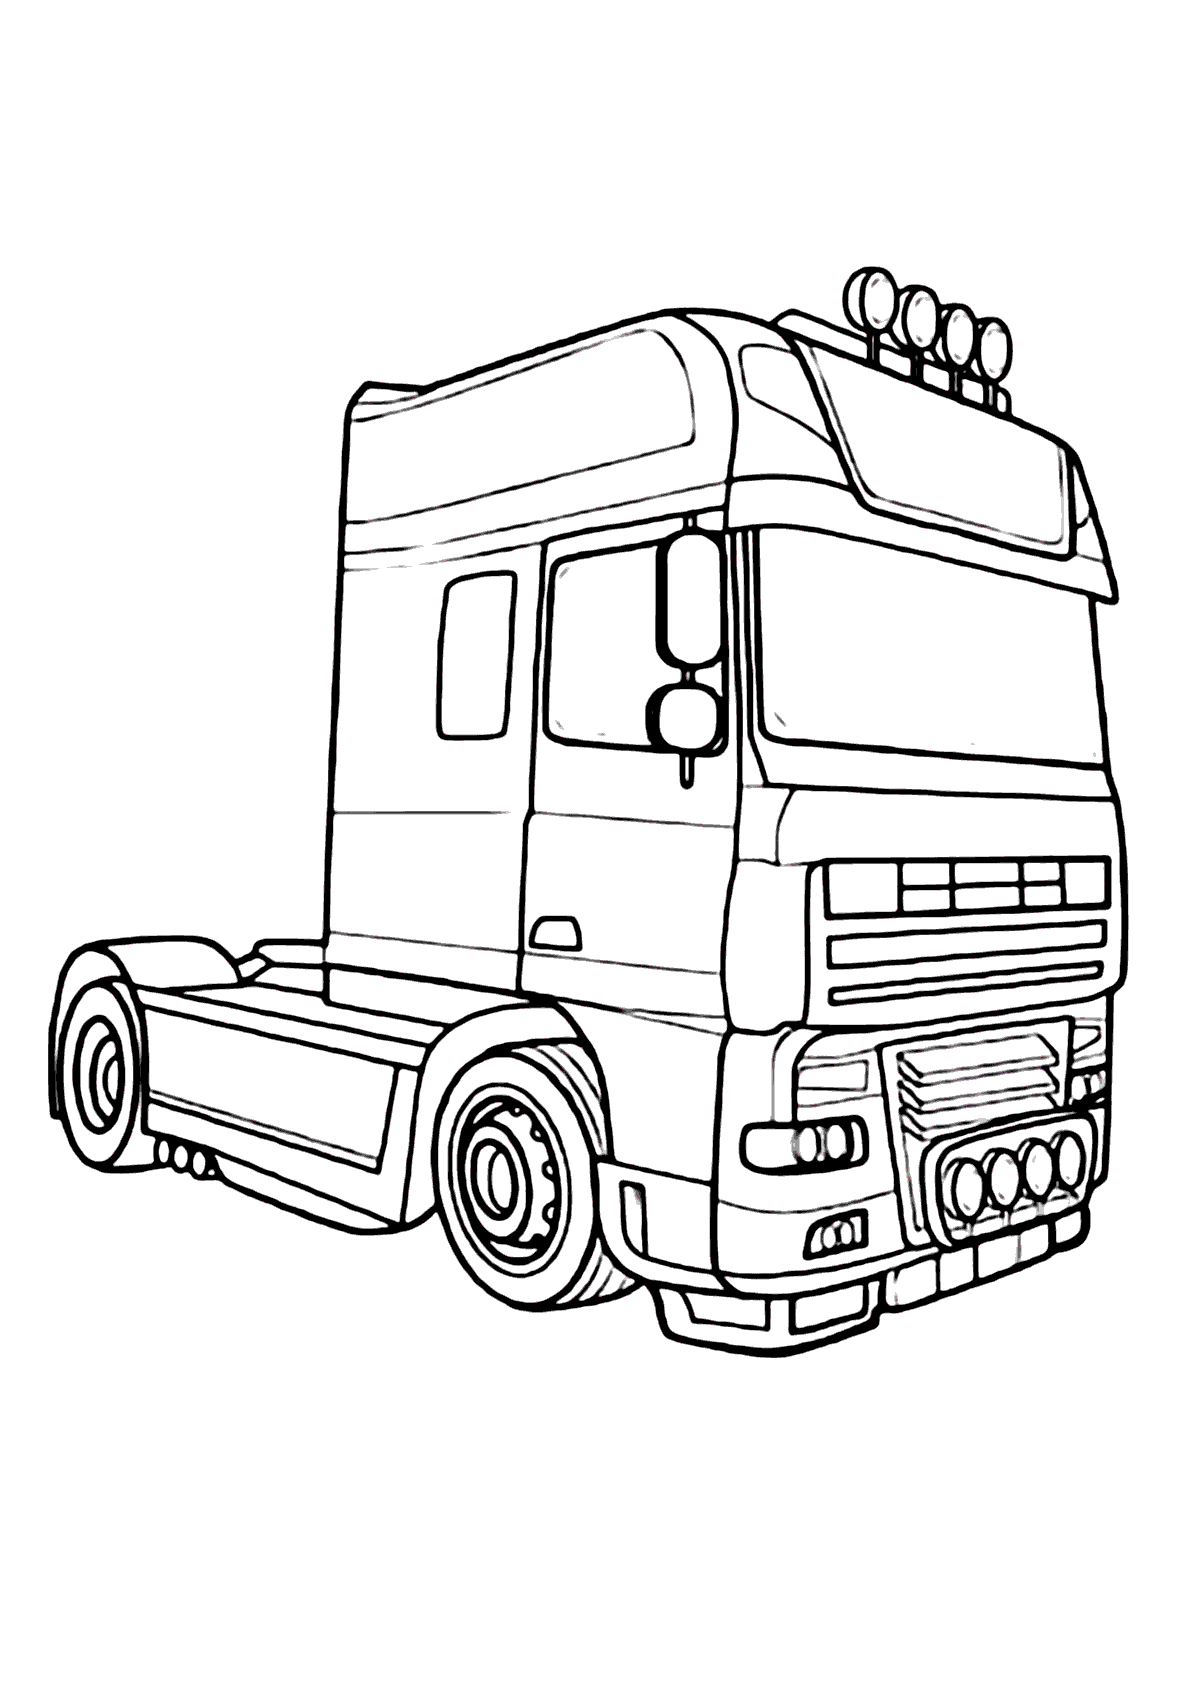 Caminhão – Desenhos para Colorir